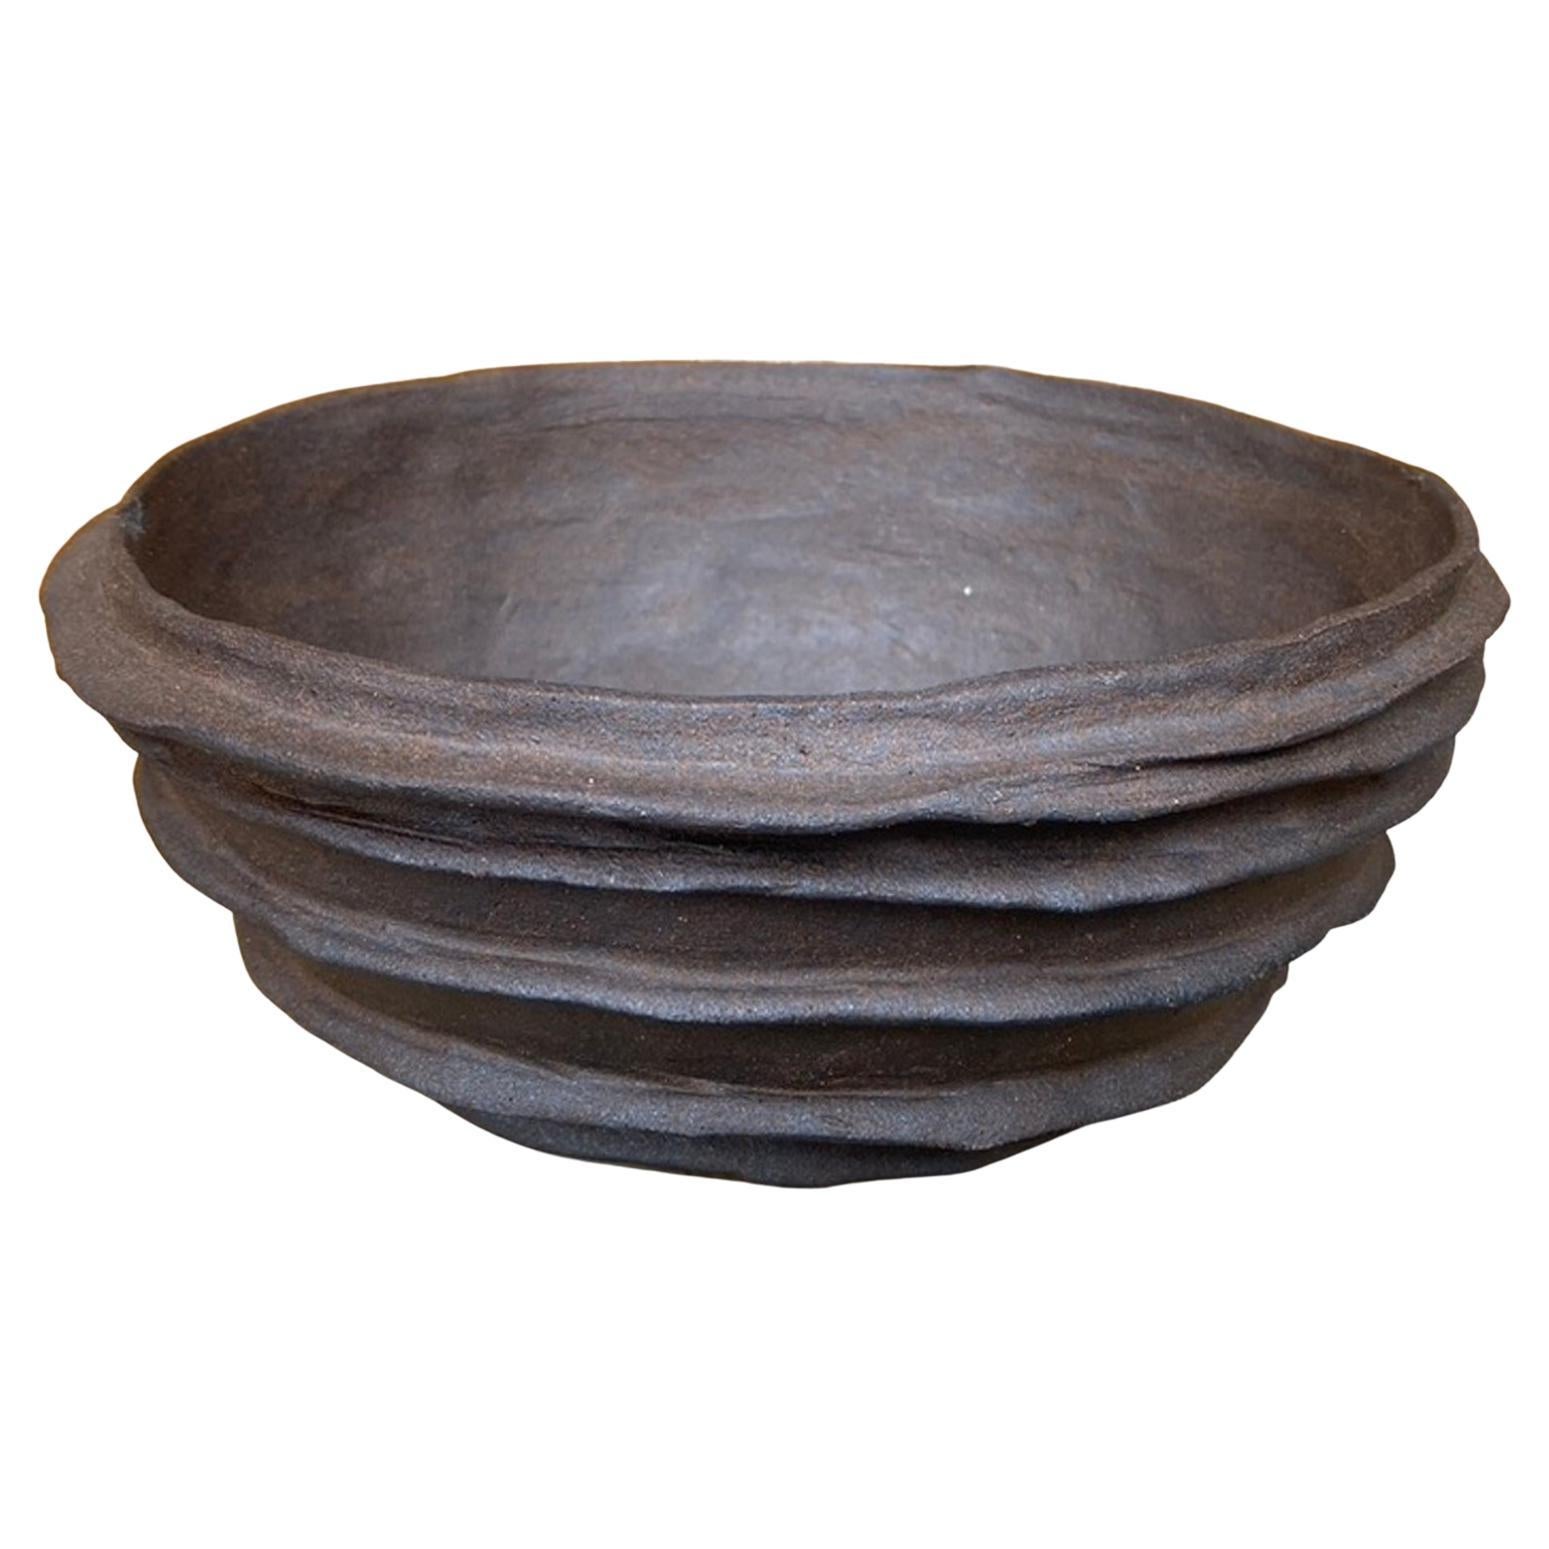 Hand Built Ceramic Planter or Bowl